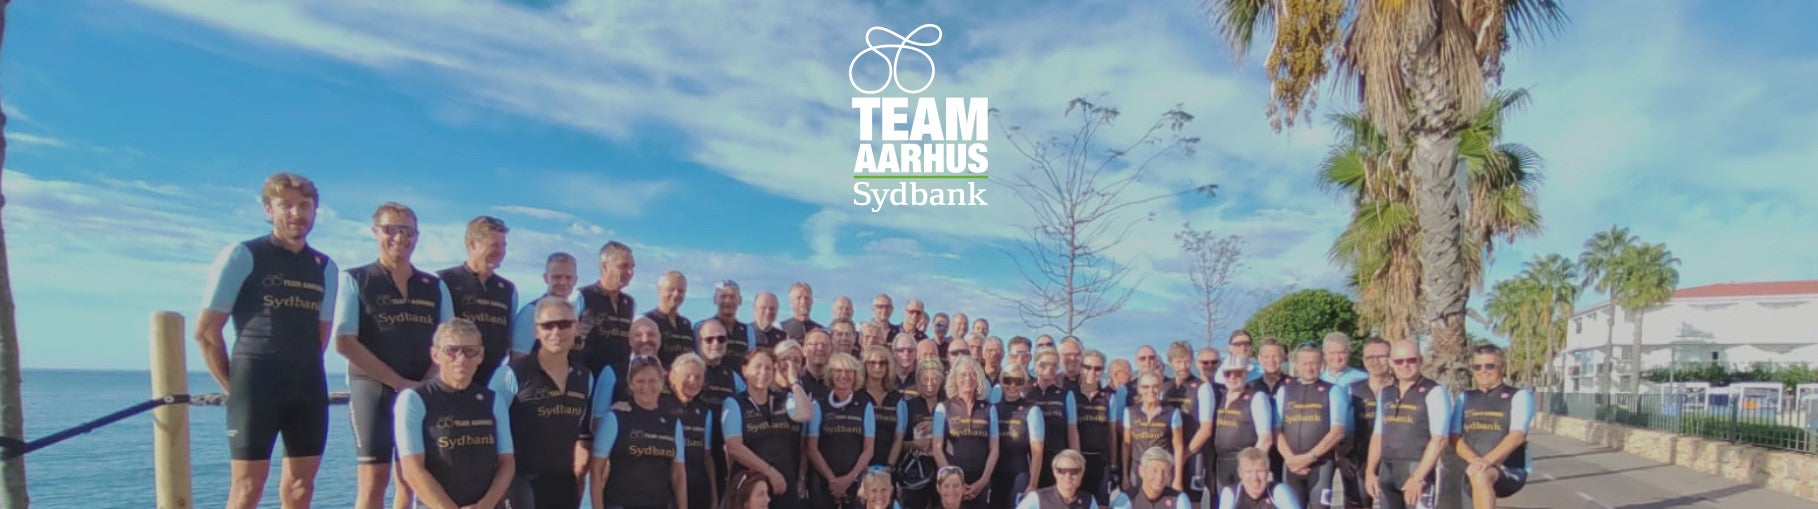 Team Aarhus